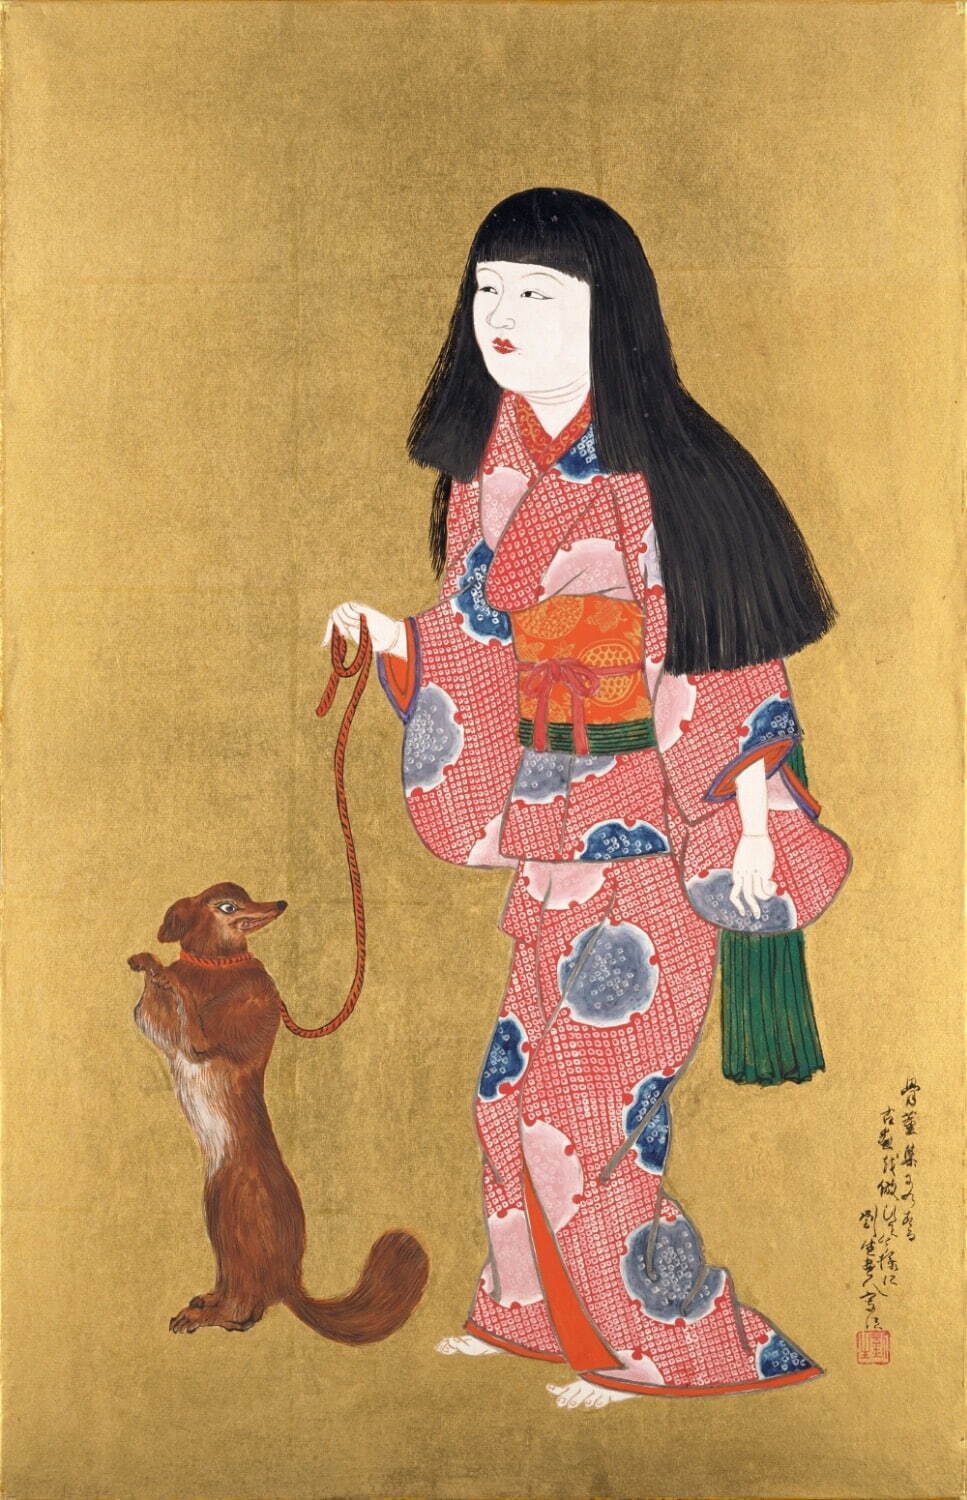 岸田劉生 《狗をひく童女》 1924年 ポーラ美術館蔵